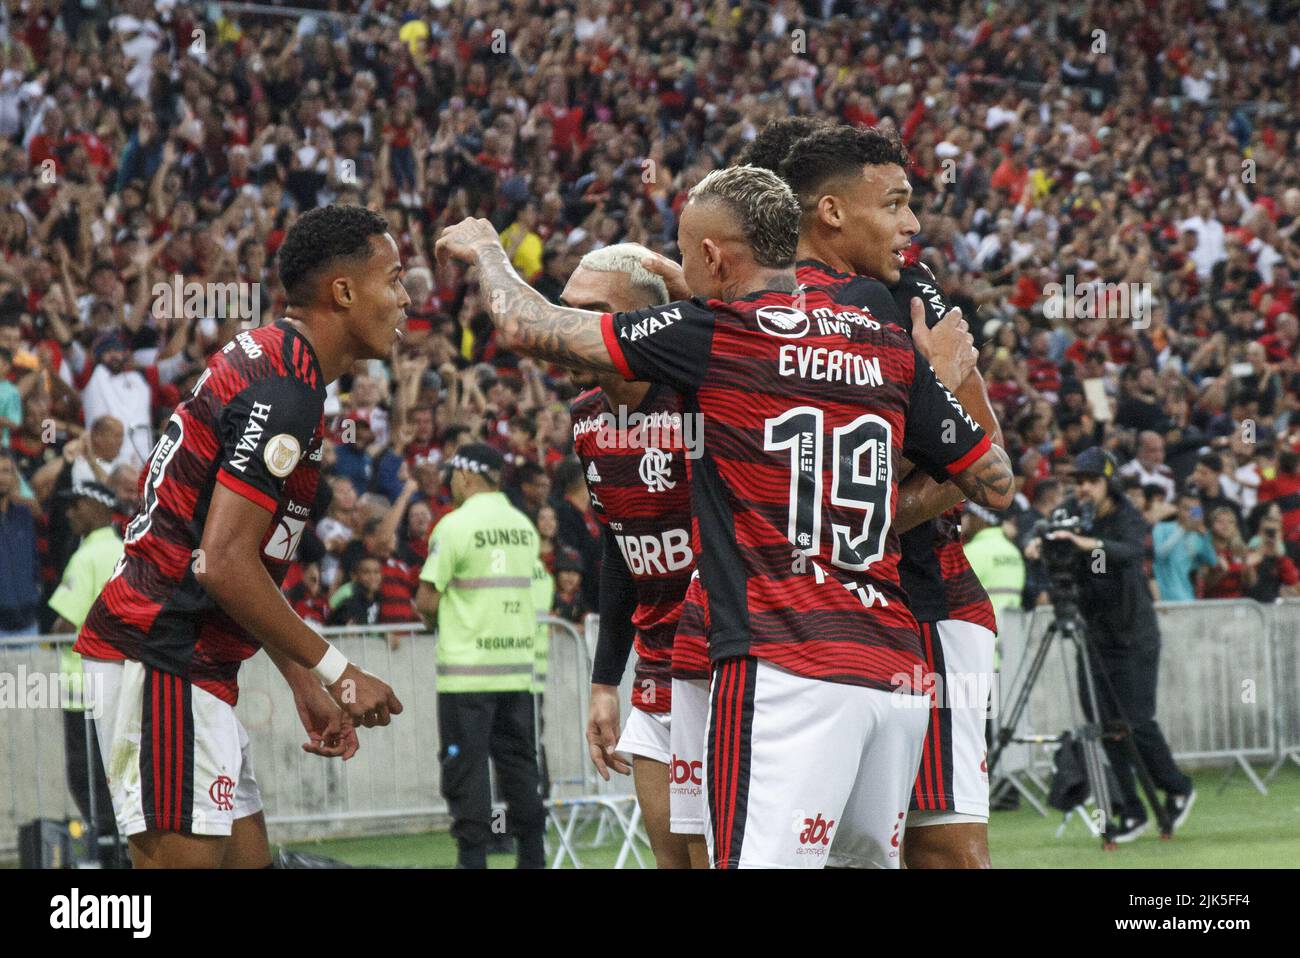 July 30, 2022, Rio de Janeiro, Rio de Janeiro, Brasil: Flamengo v